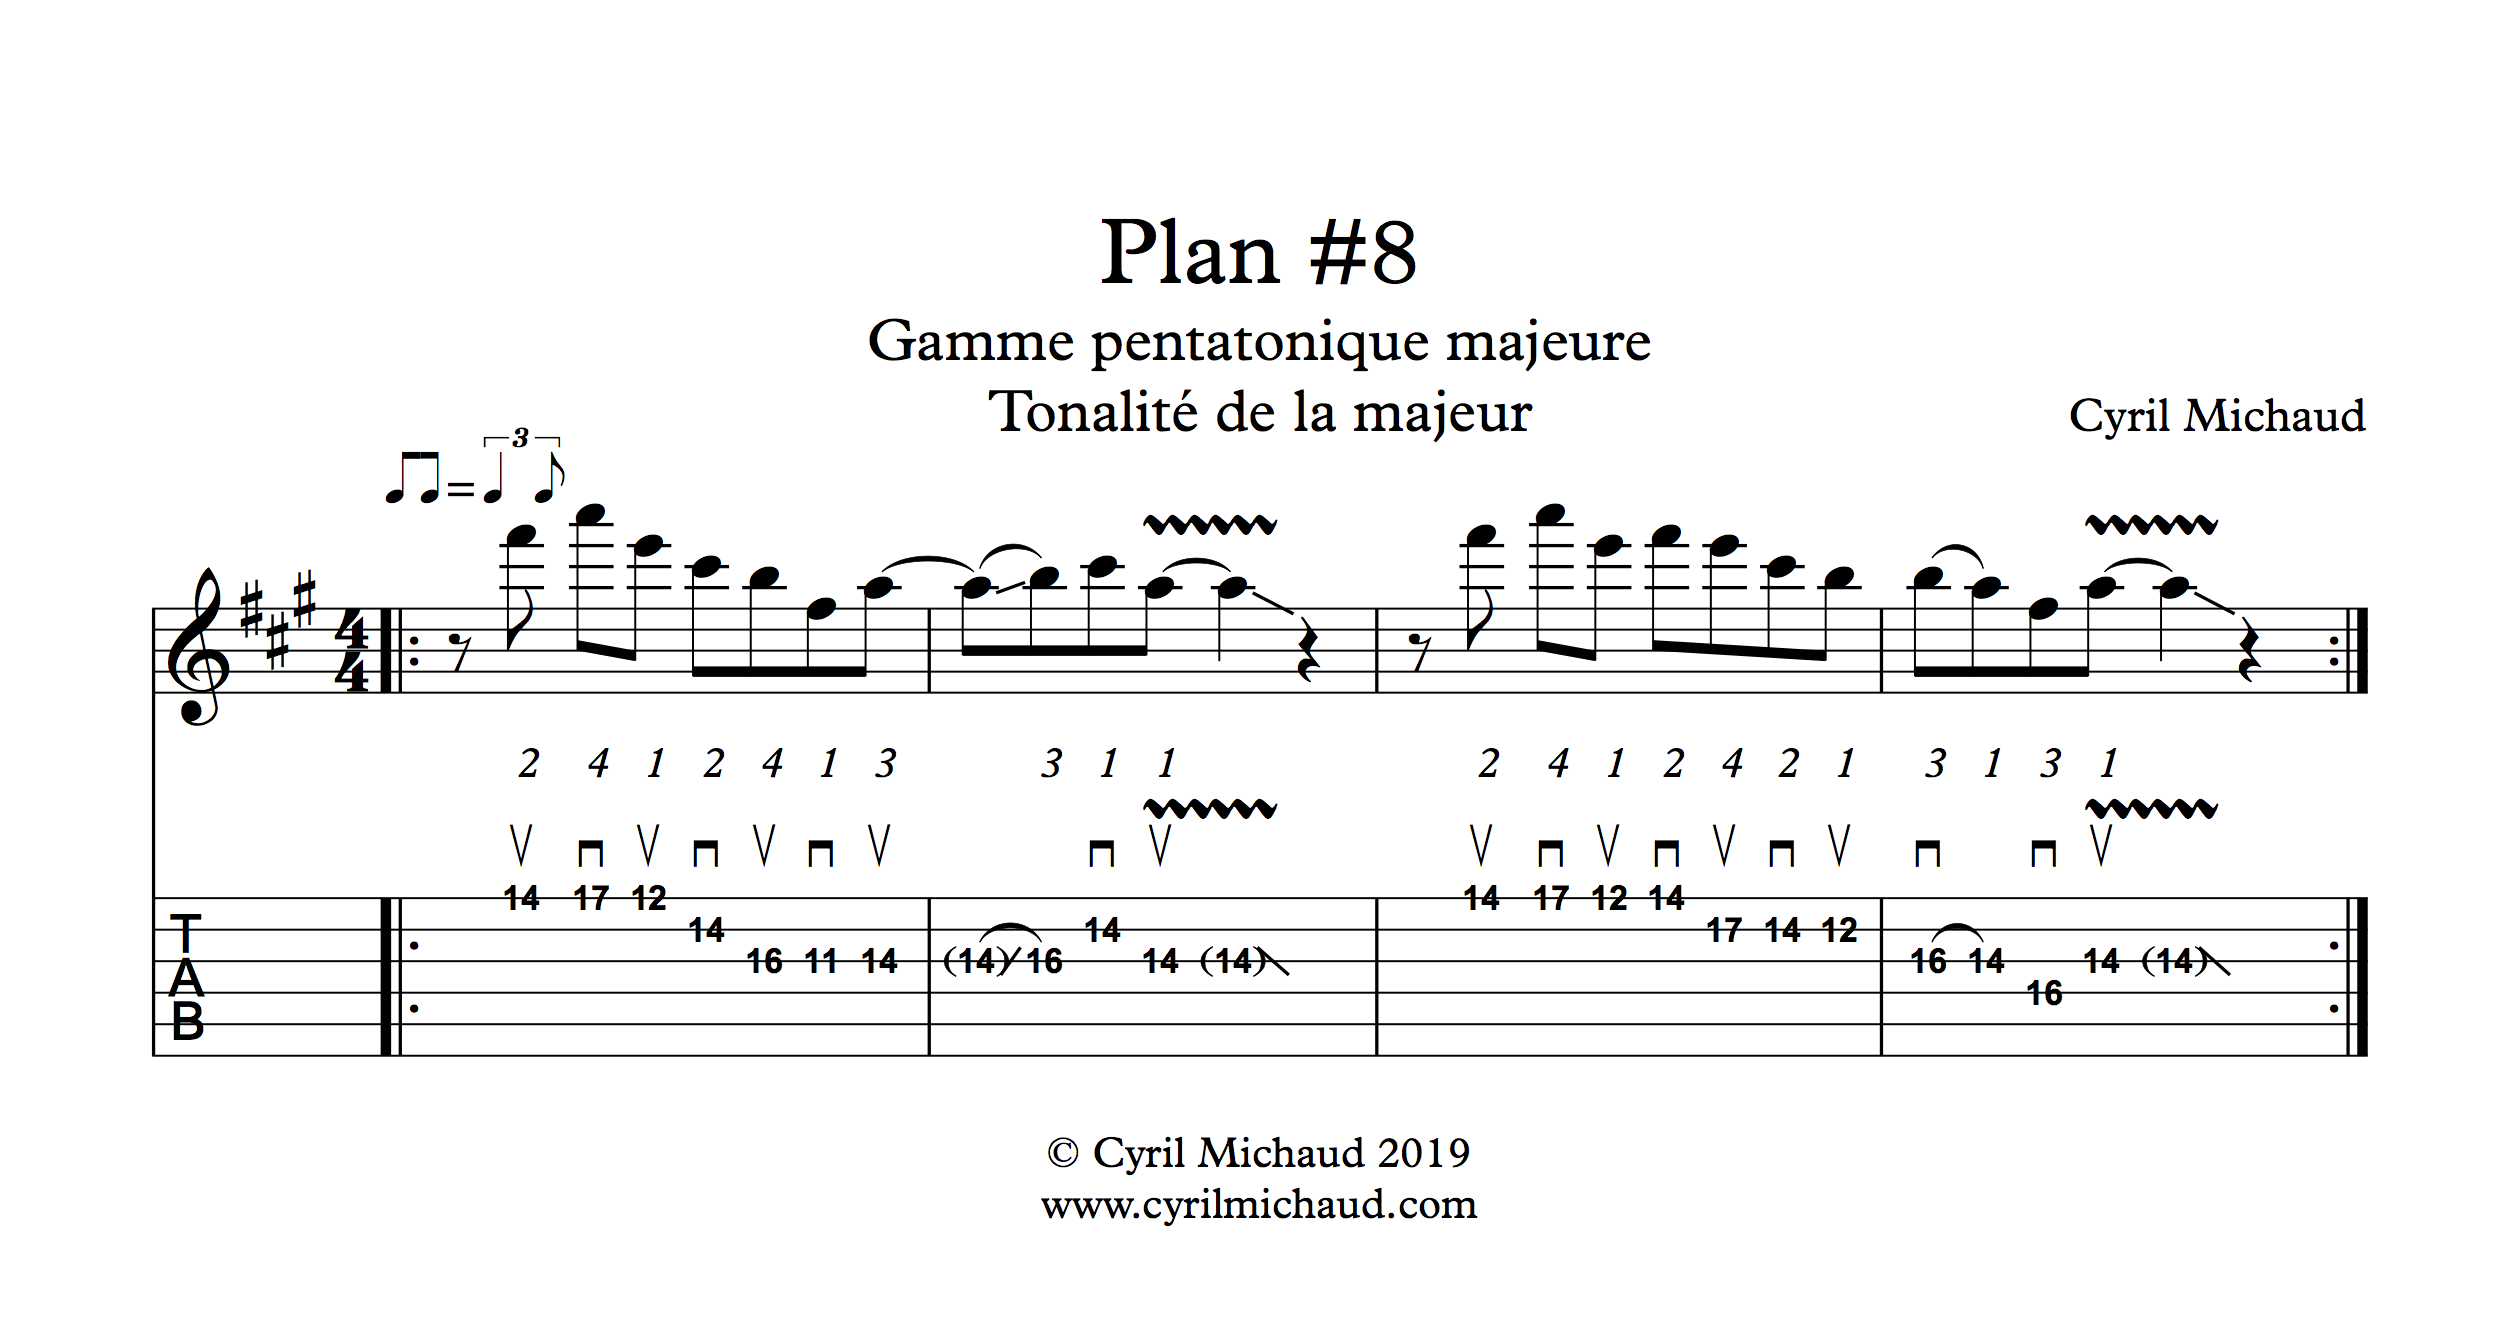 Plan blues sur la gamme pentatonique majeure (8)